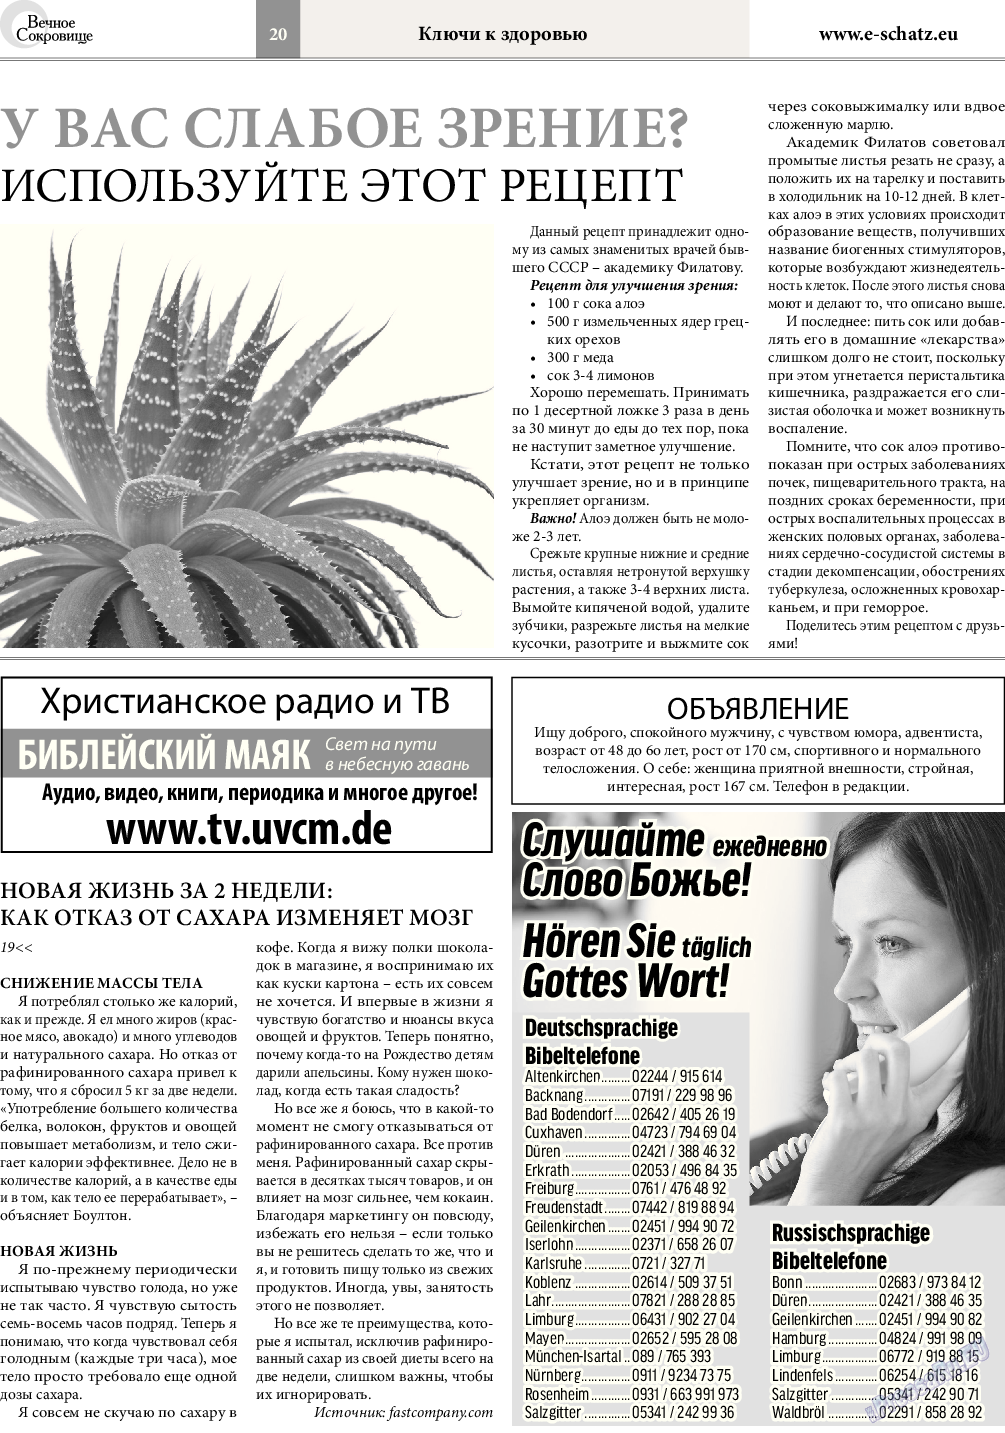 Вечное сокровище, газета. 2015 №6 стр.20